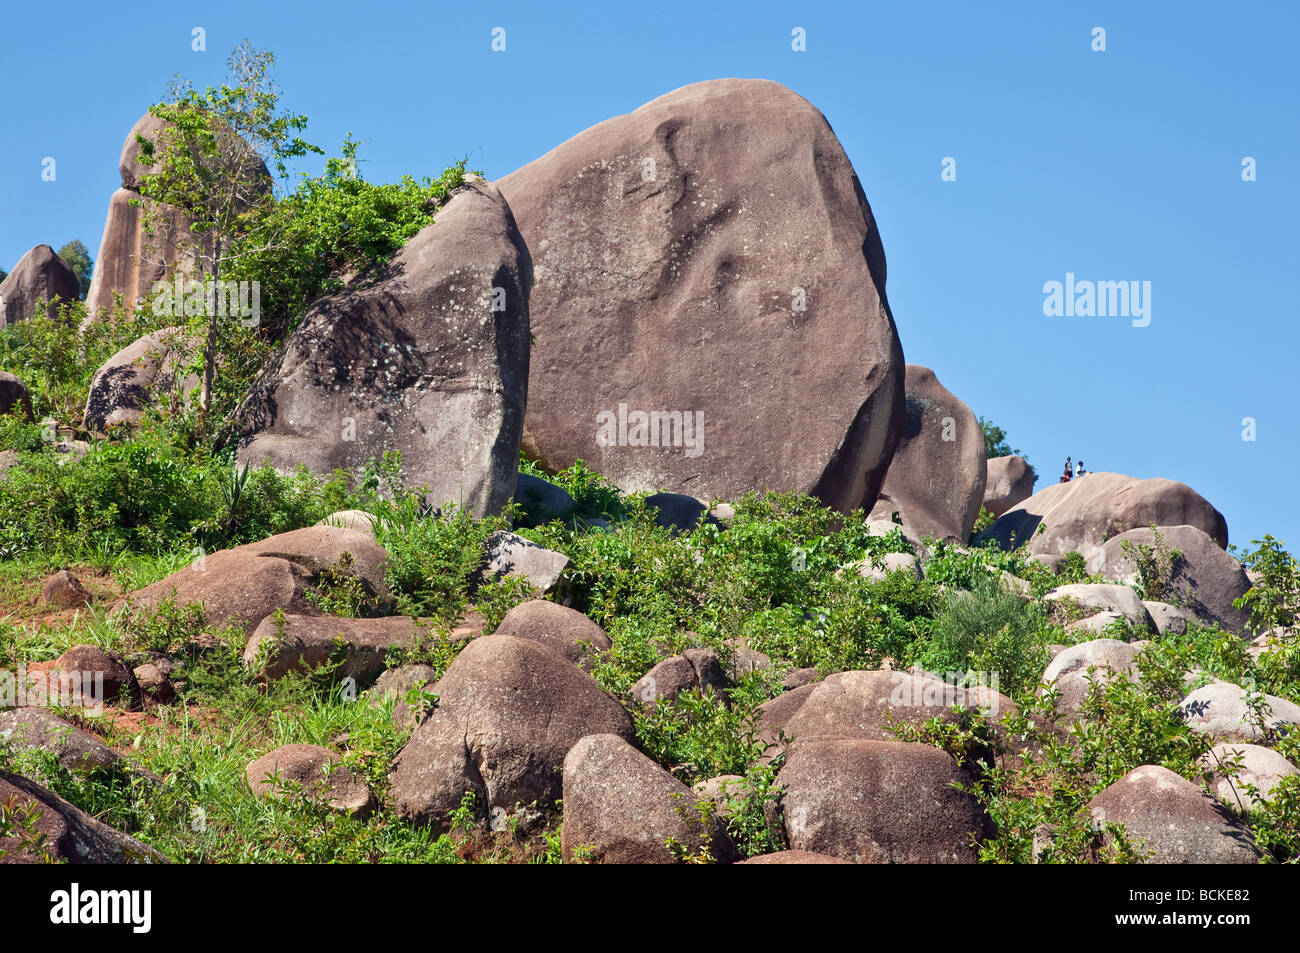 Au Kenya. Les enfants jouent entre les rochers de granit géant dans l'ouest du Kenya. Banque D'Images